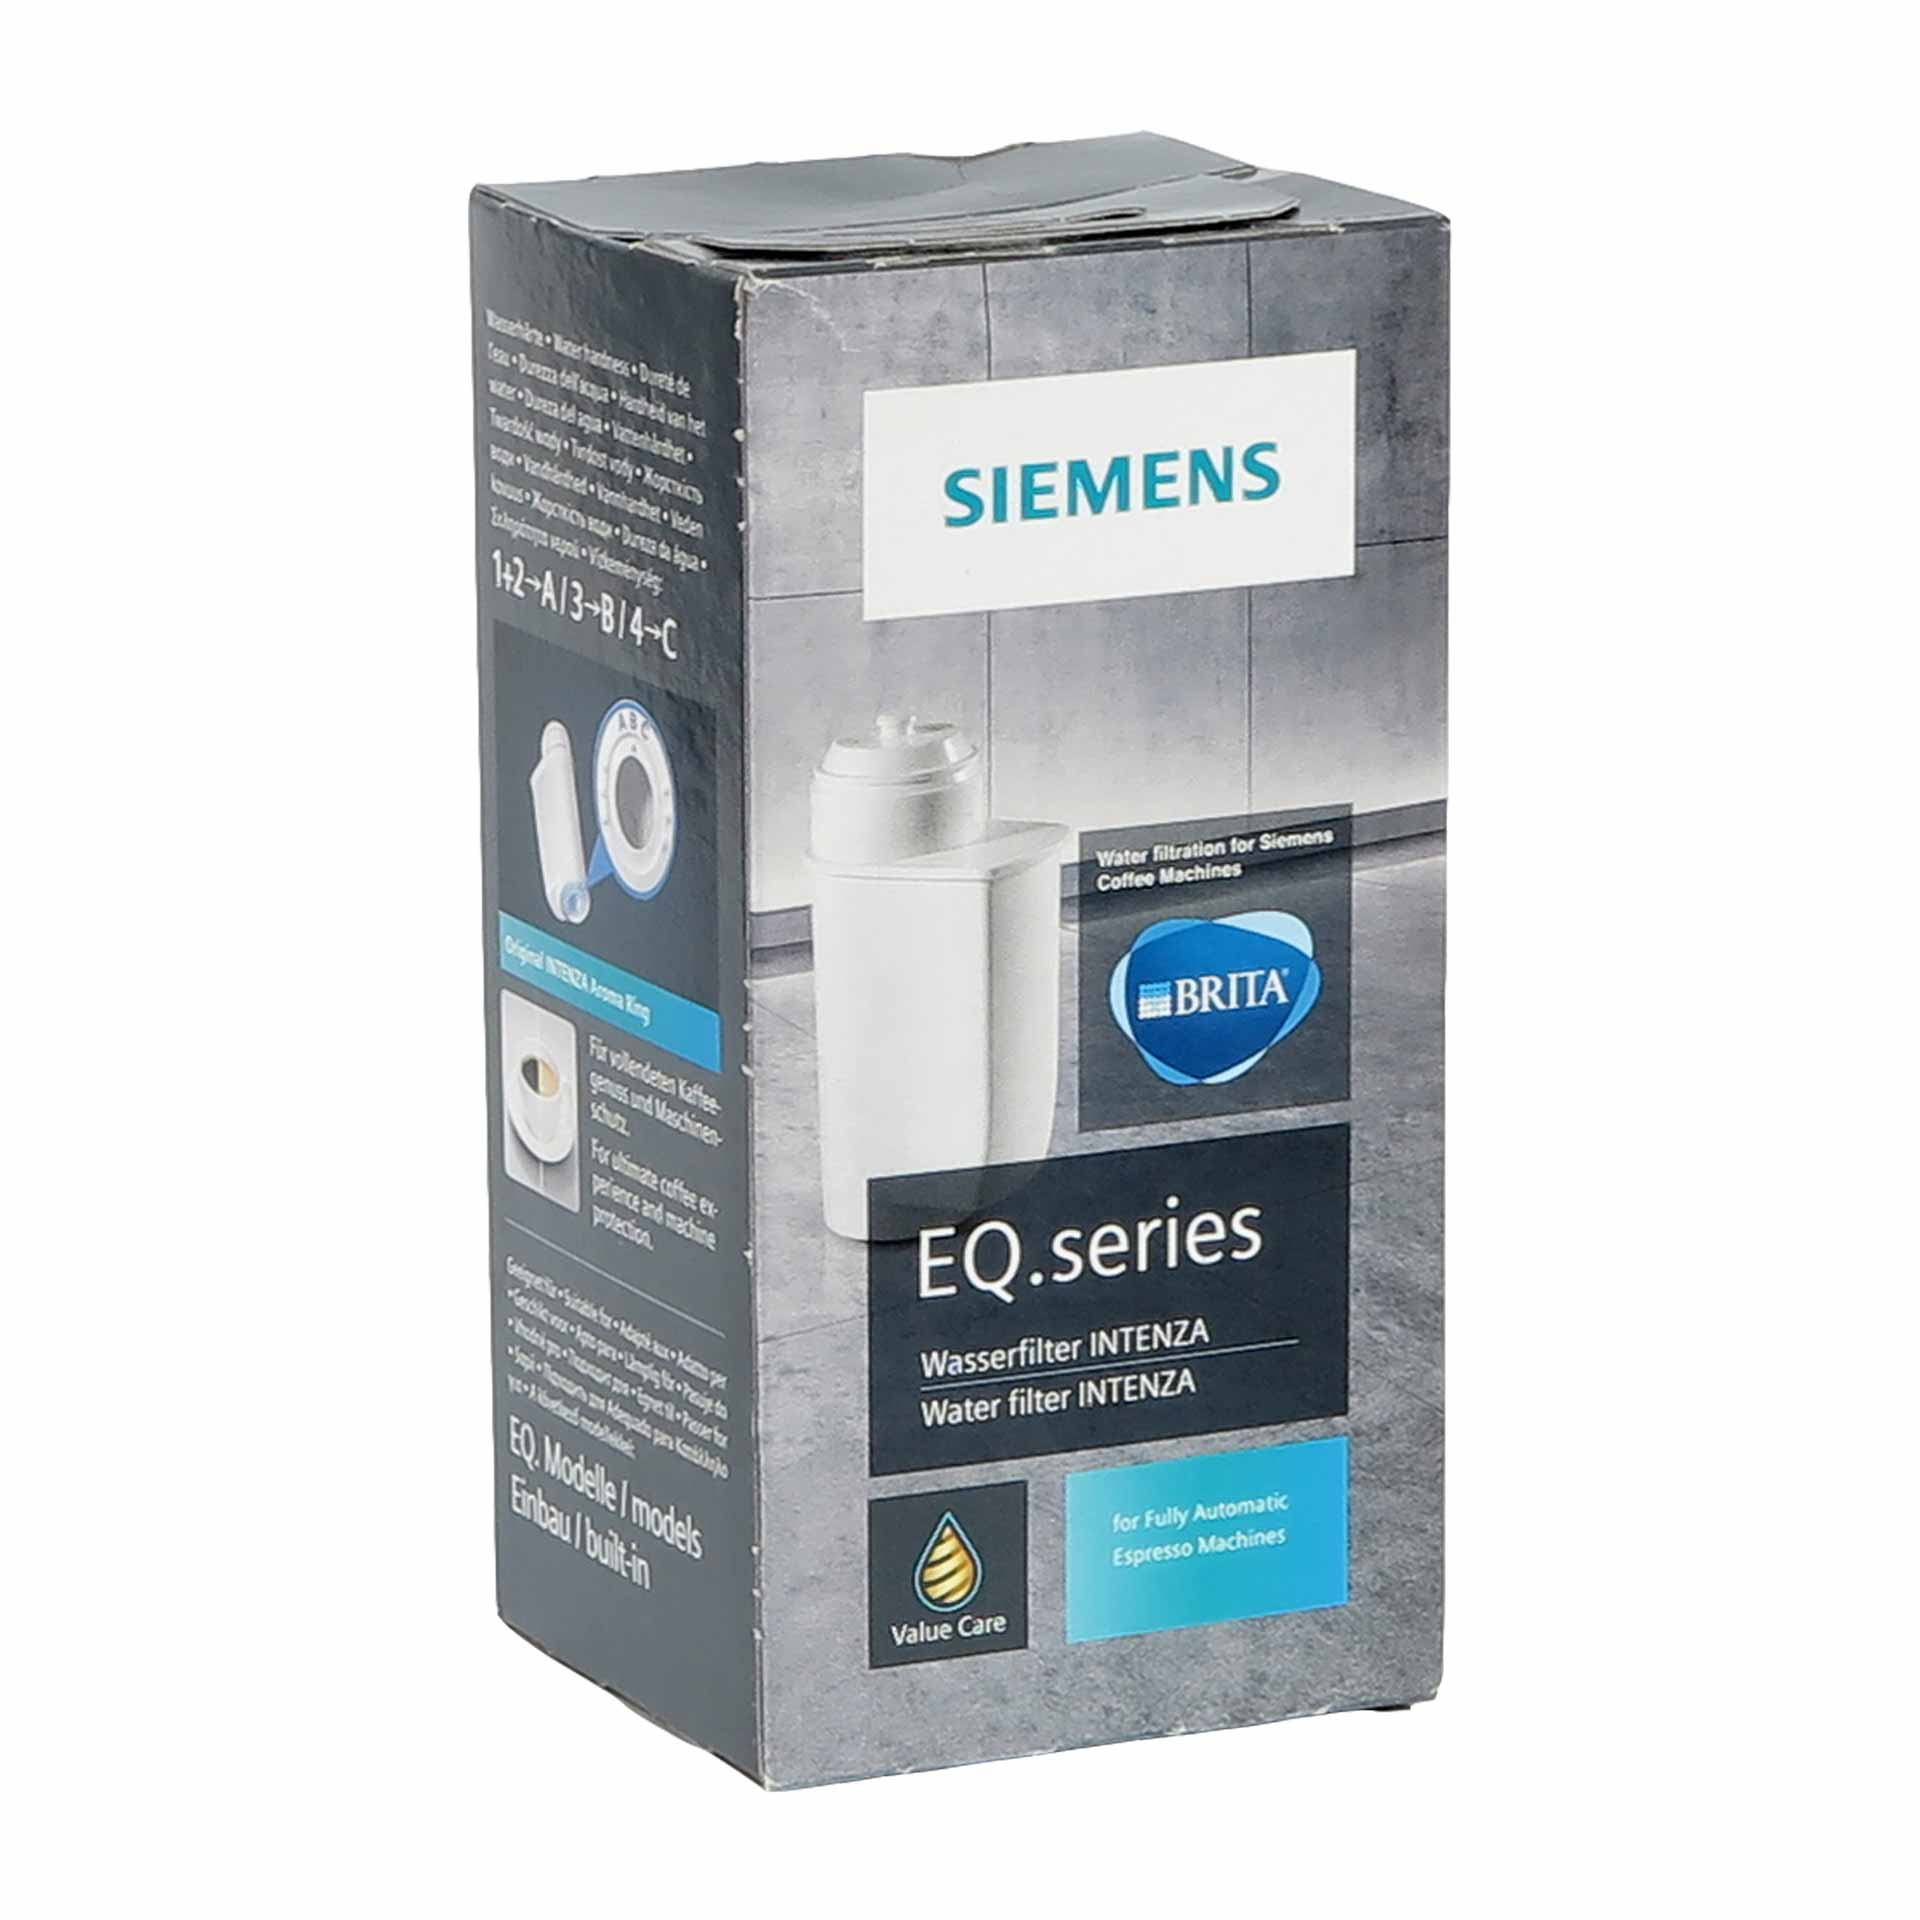 Siemens TZ70003 - BRITA Intenza Wasserfilter für Kaffeevollautomaten  4242003442340